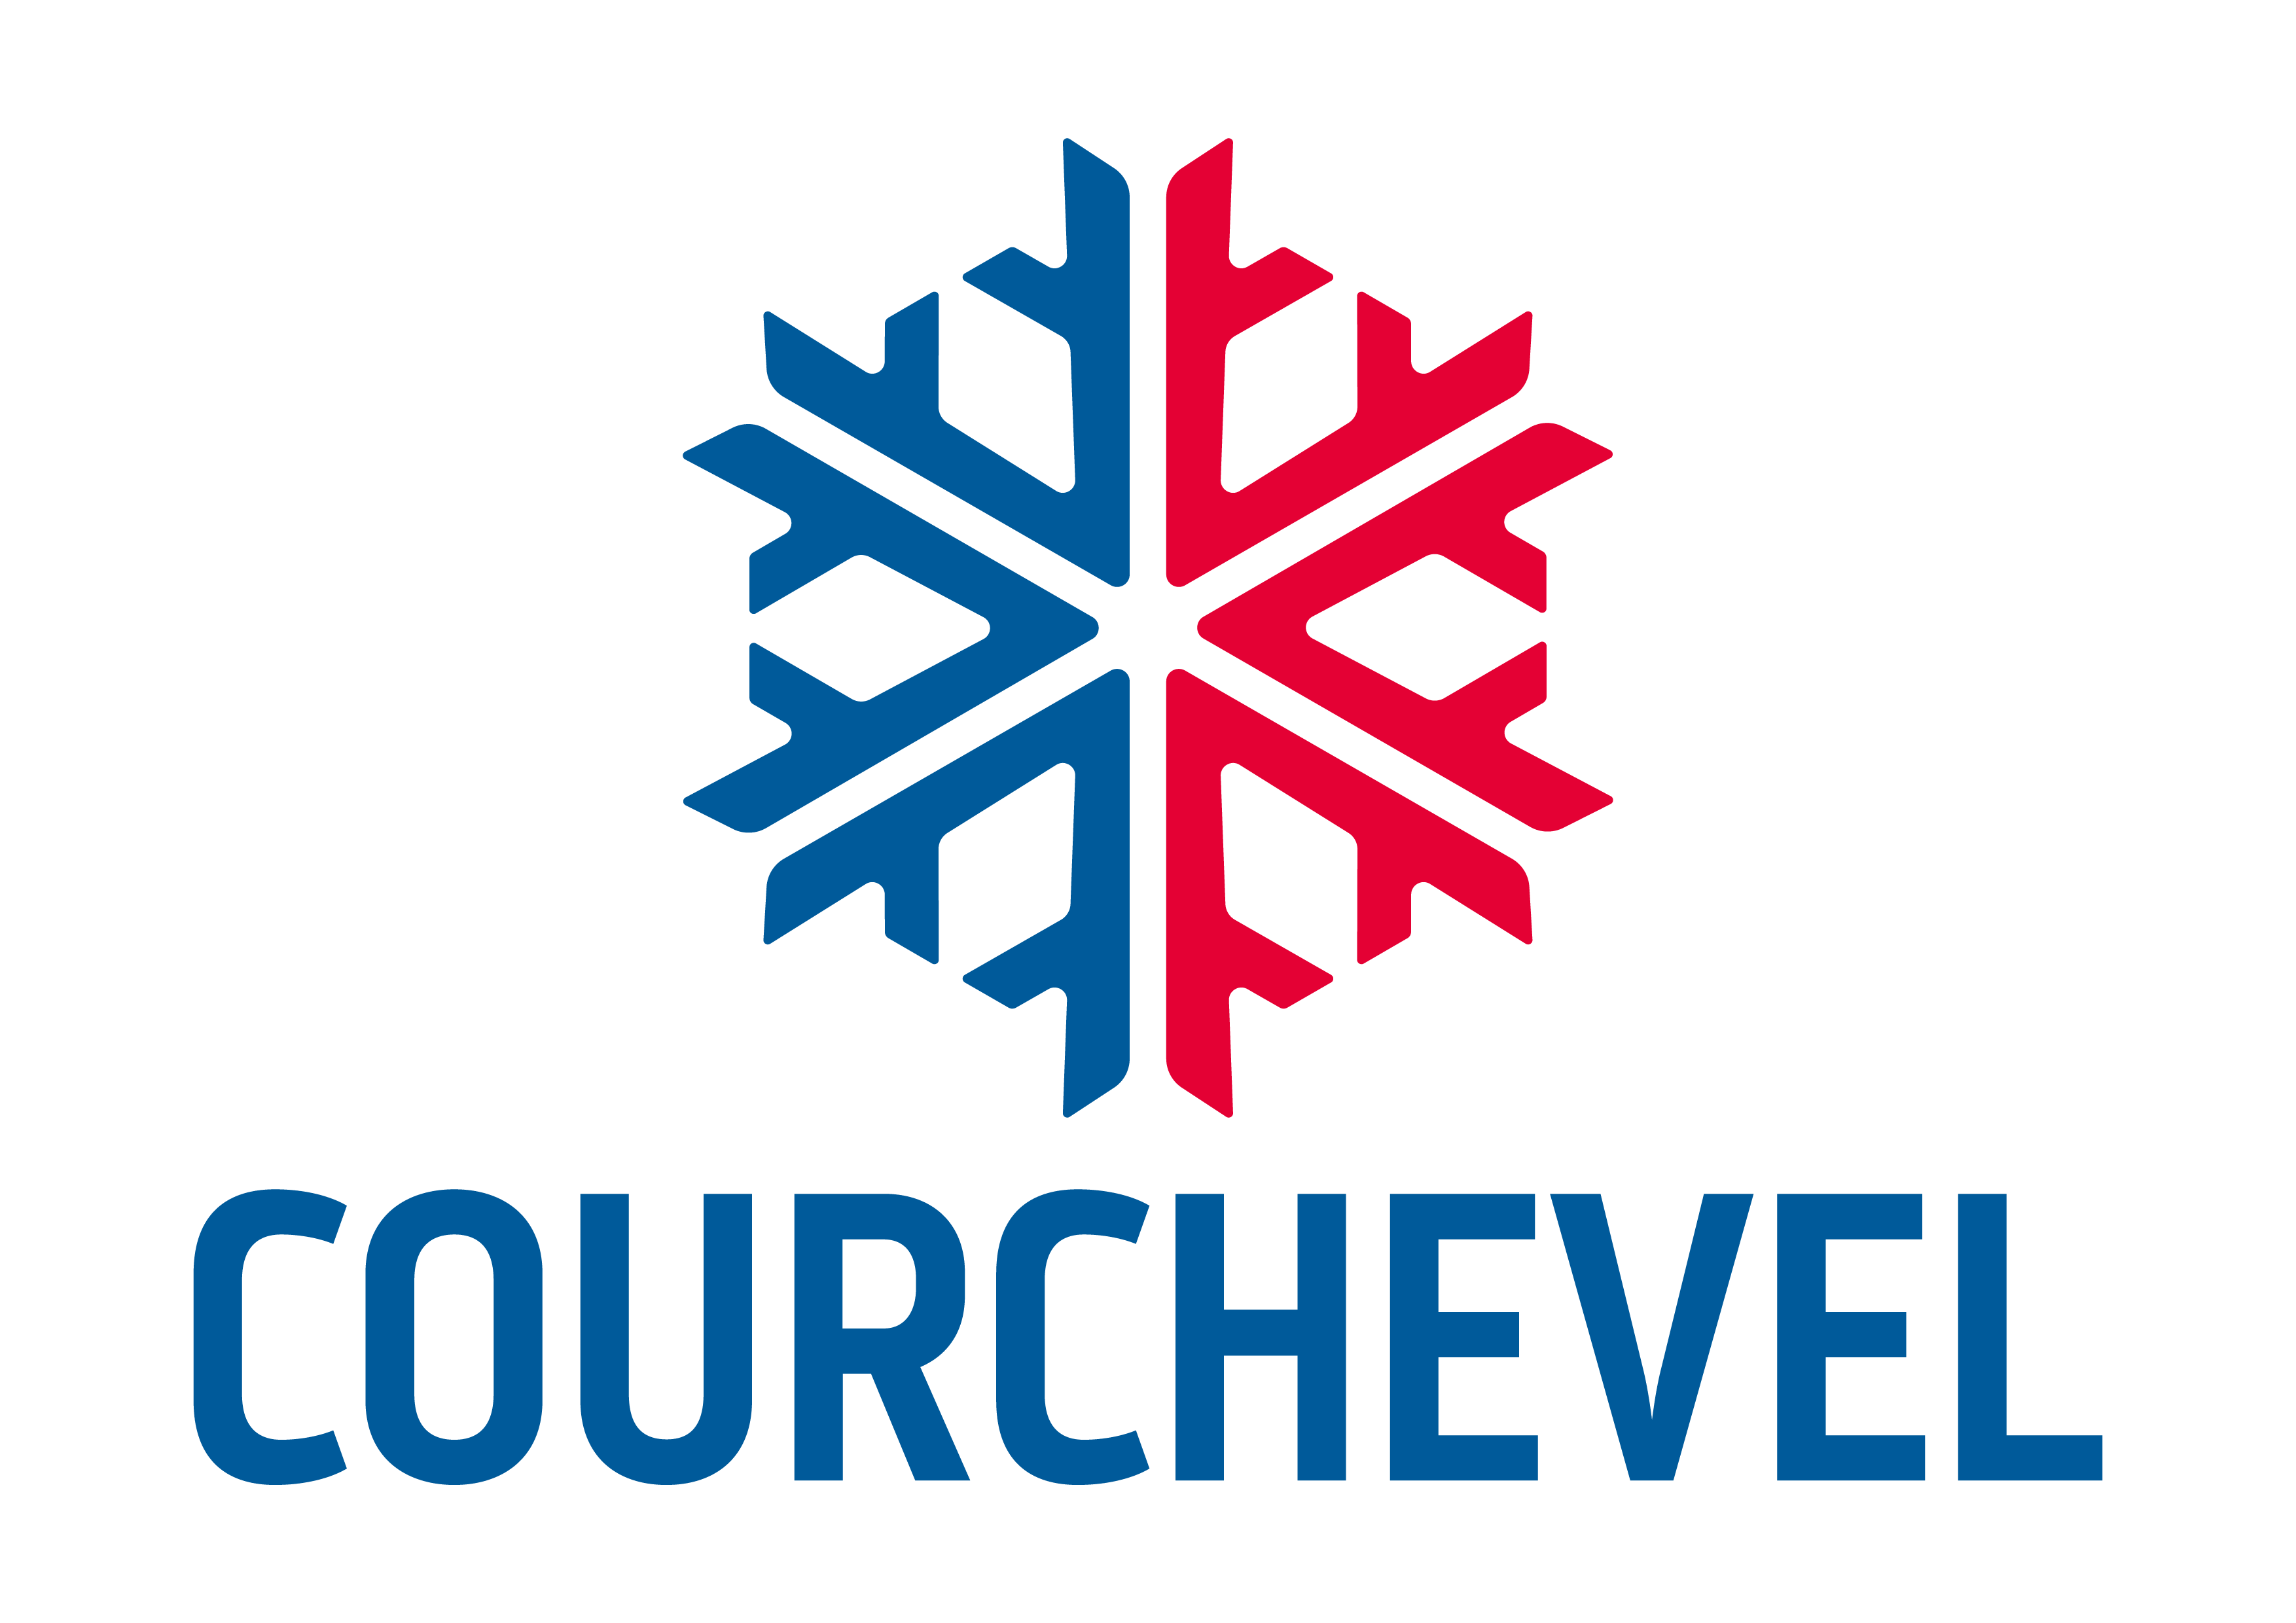 Courchevel logo